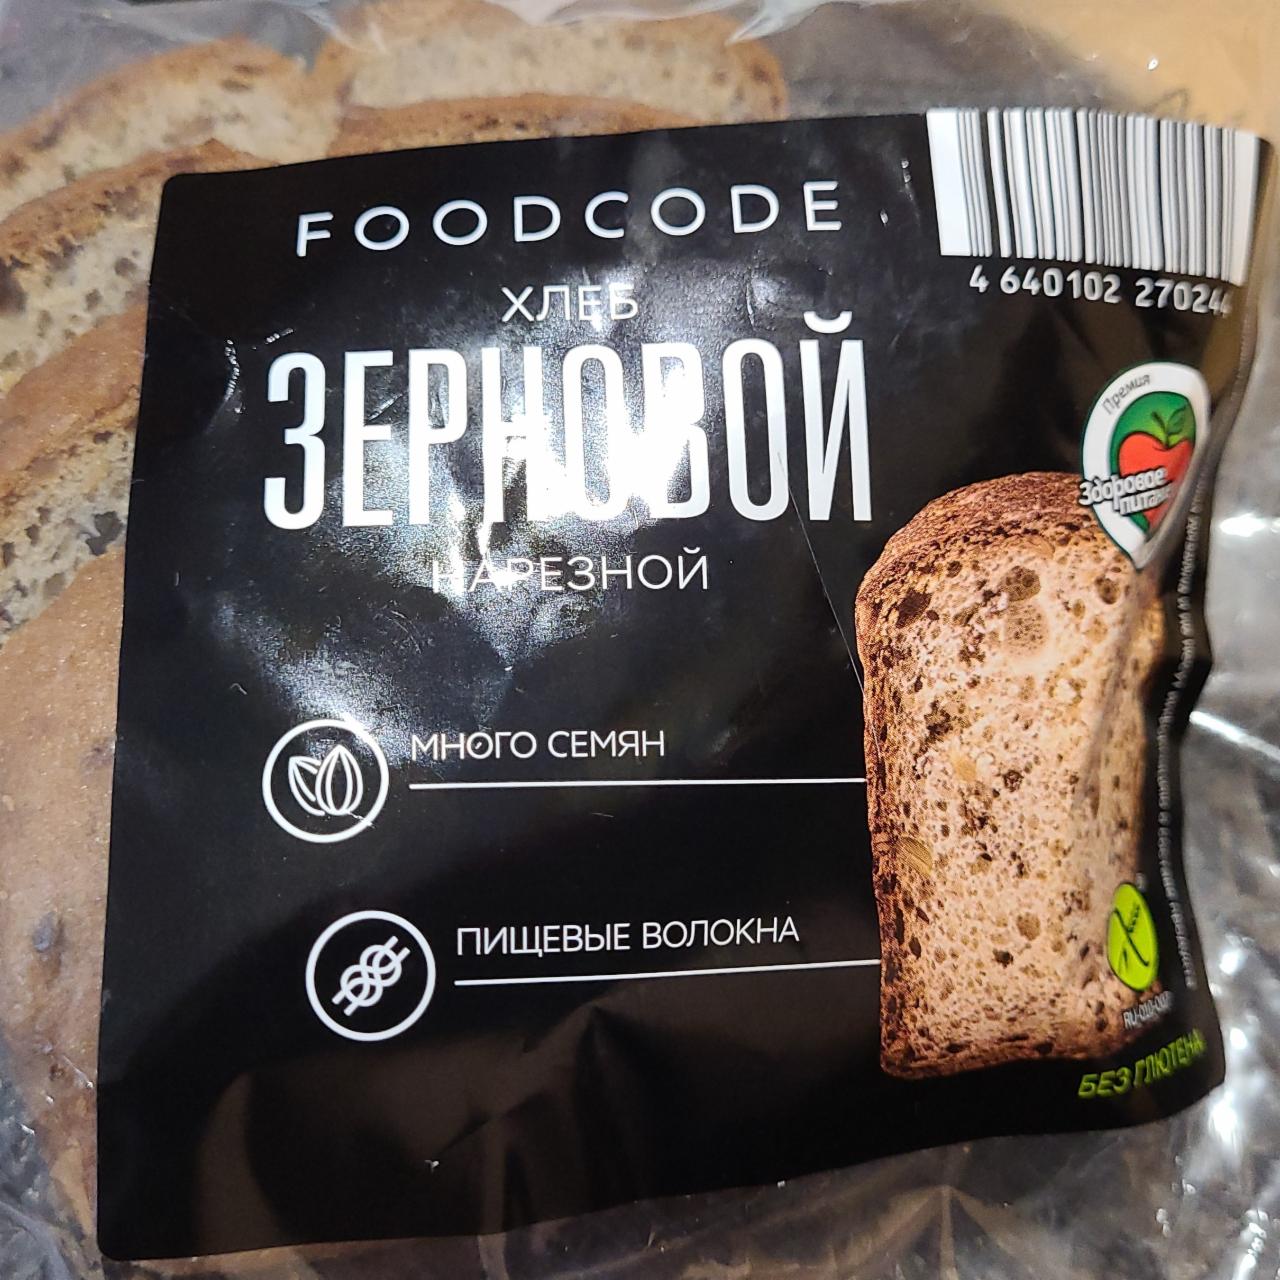 Фото - Хлеб зерновой нарезной Foodcode